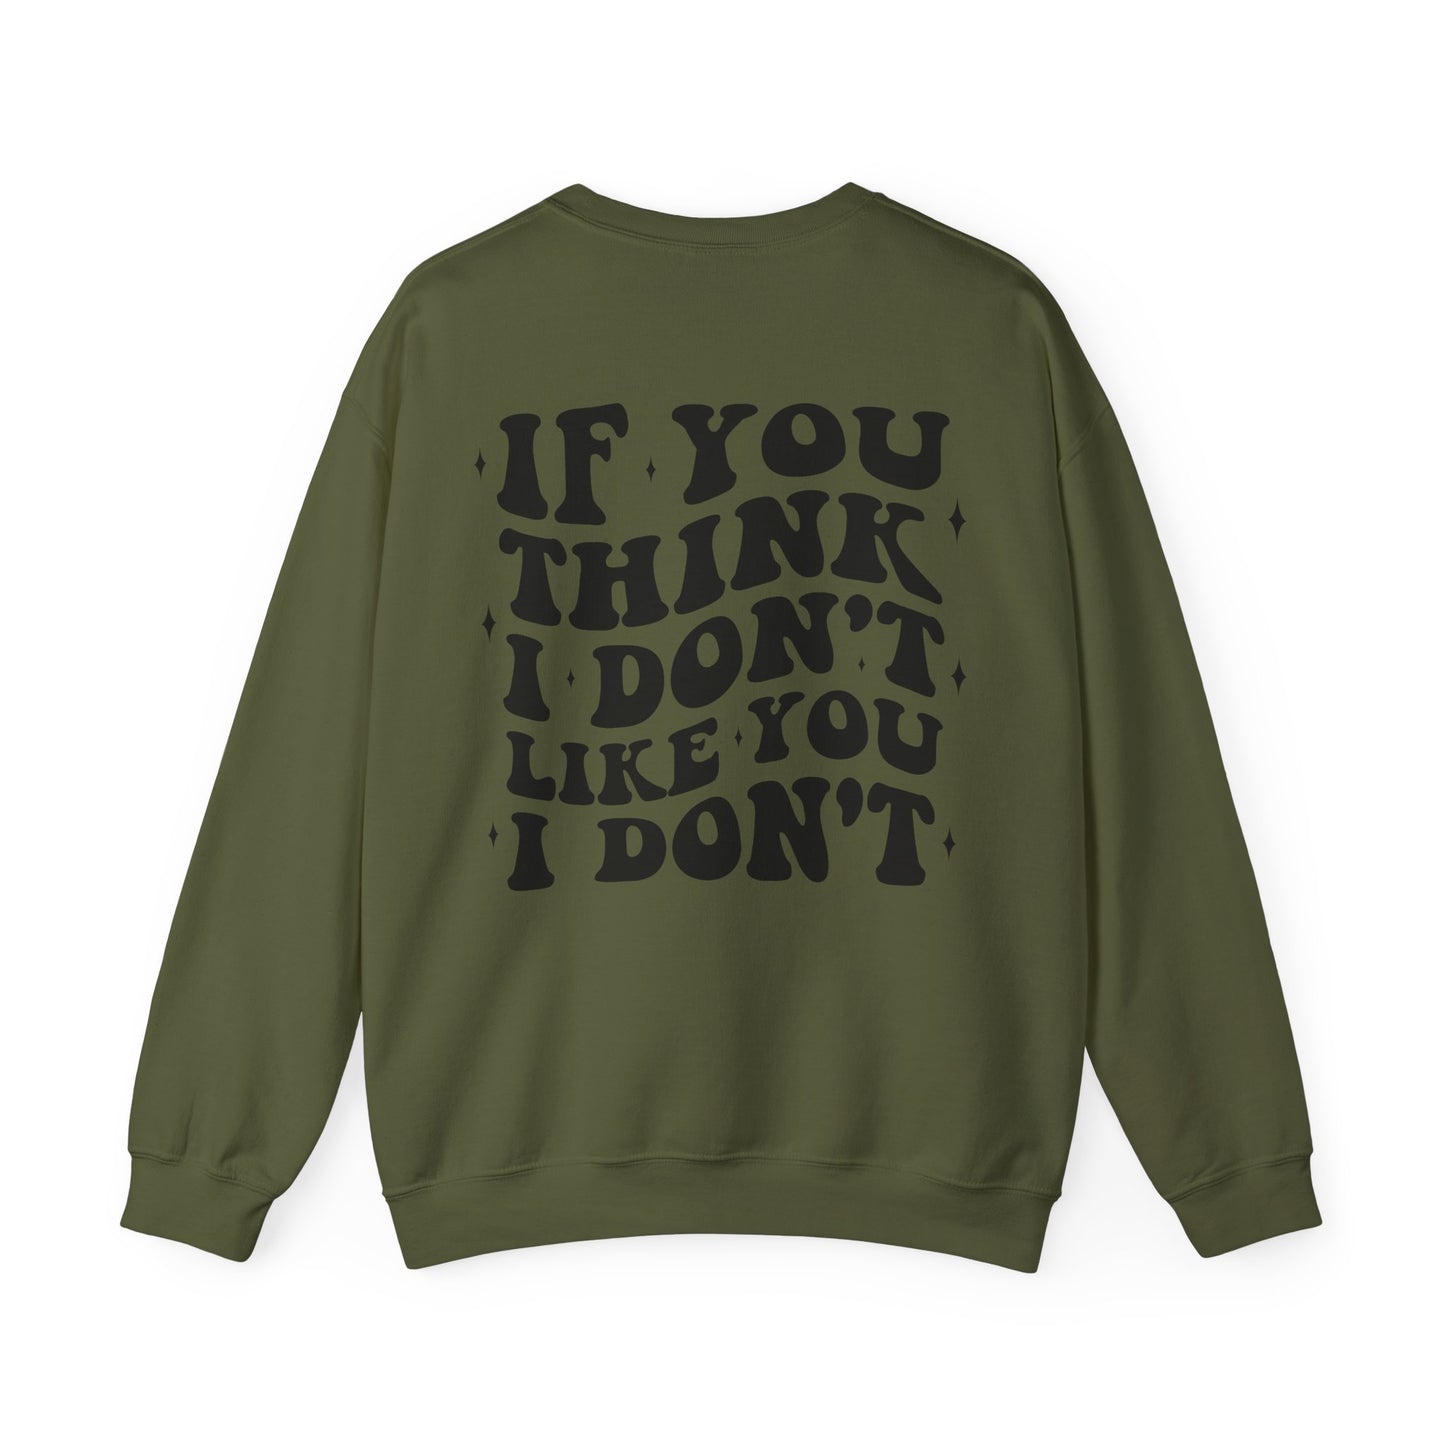 "If You Think I Dont Like You I Dont" Unisex Heavy Blend™ Crewneck Sweatshirt